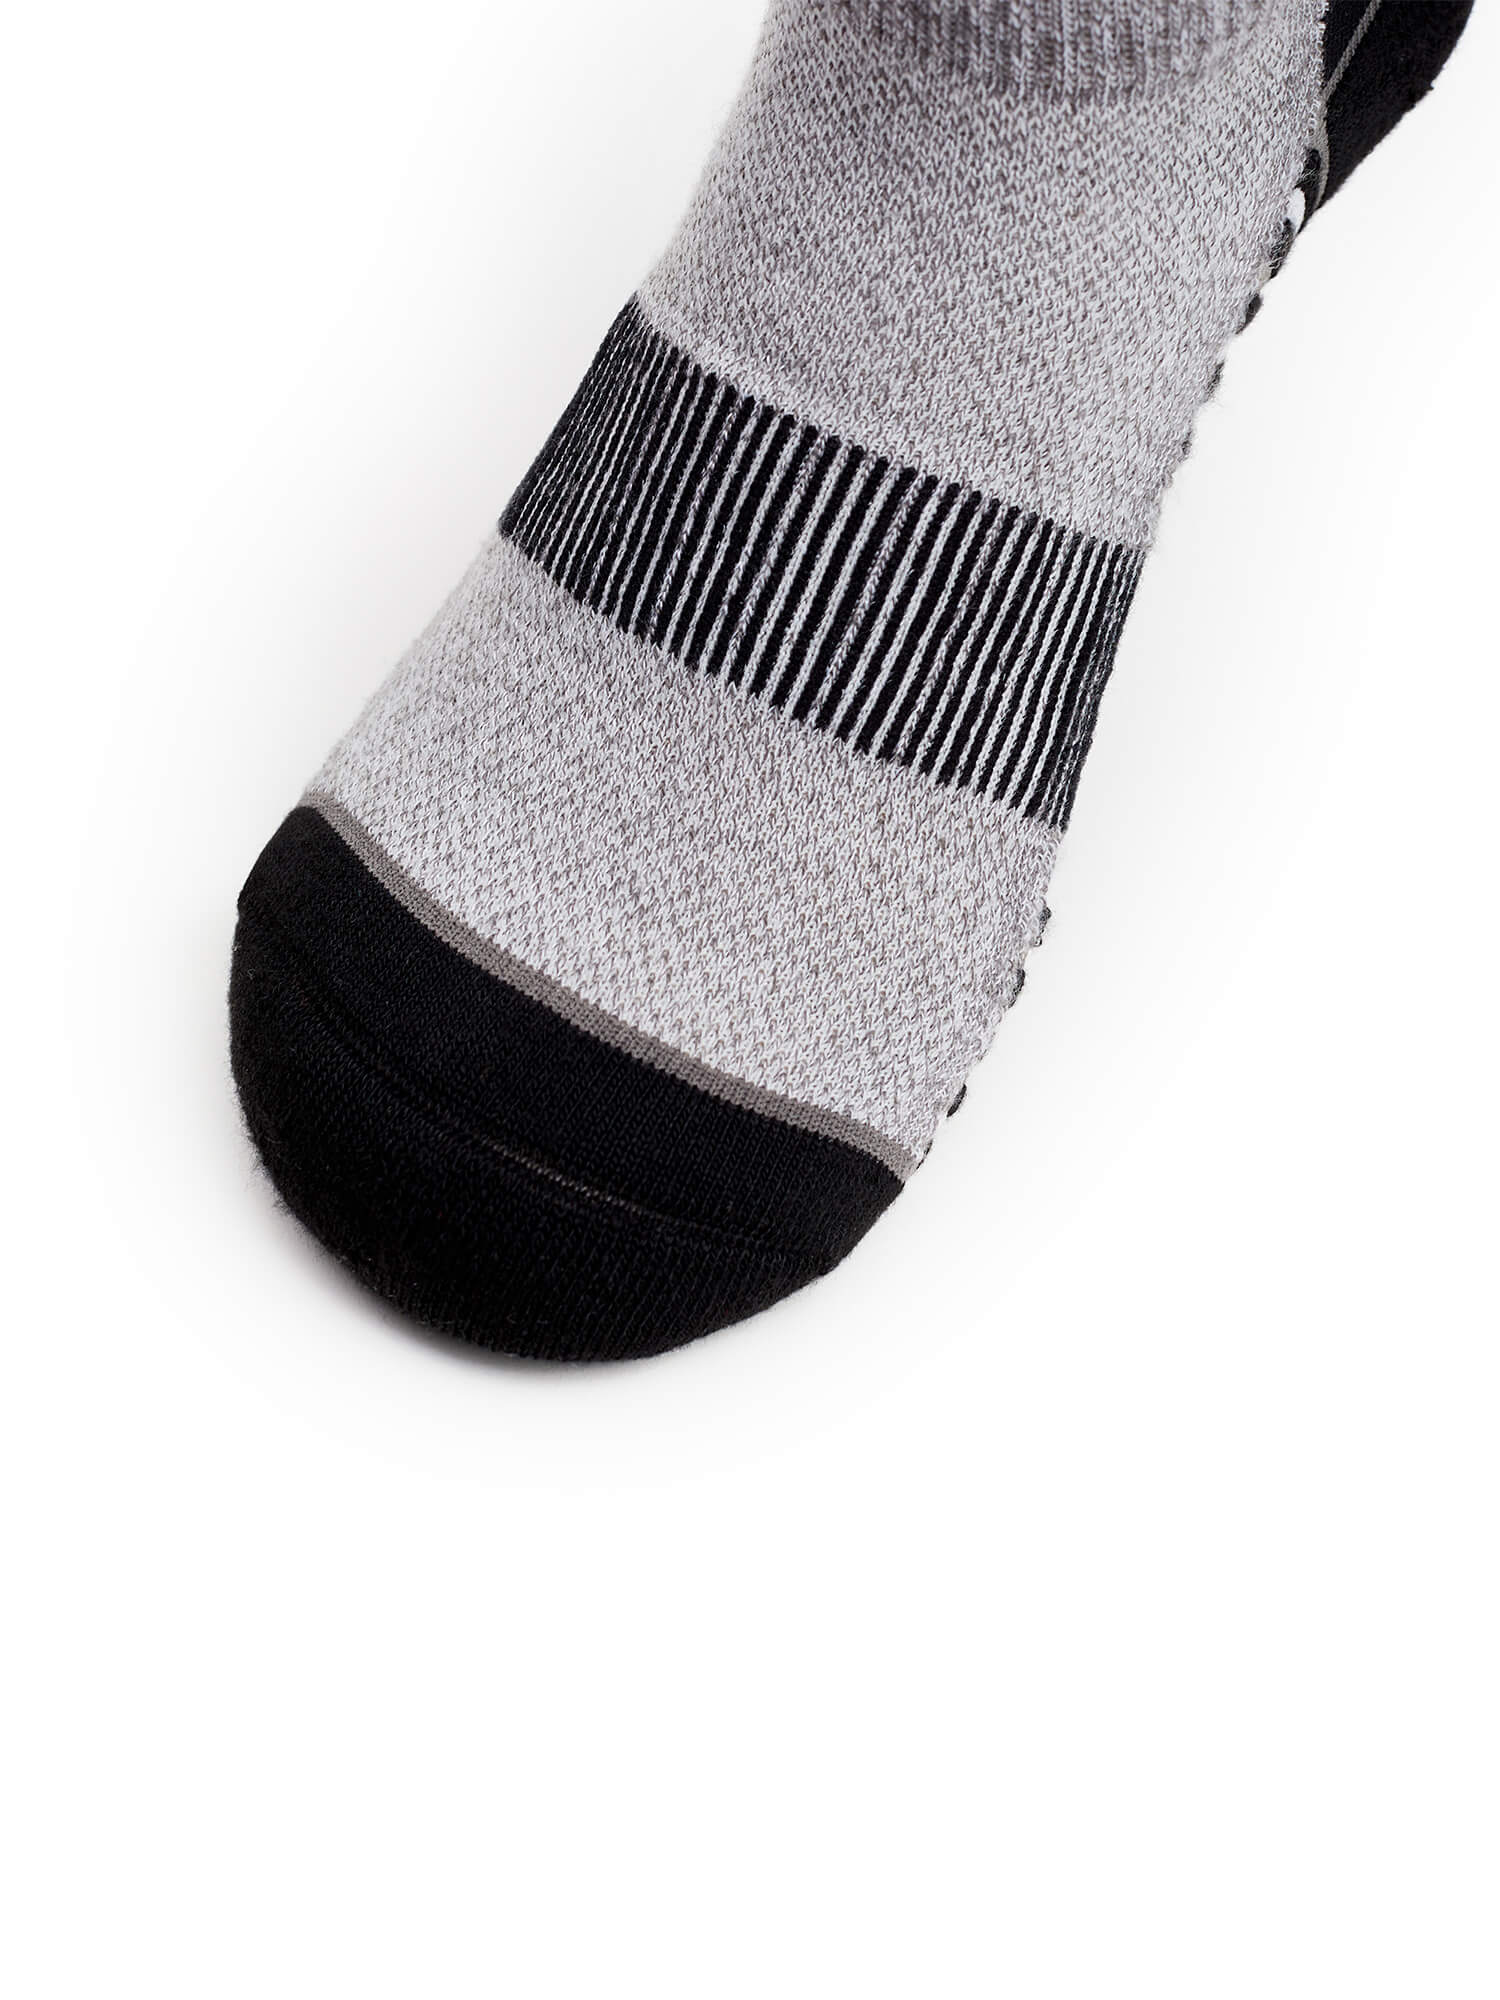 Toe of Thorlos Experia Repreve Ankle Socks in Black